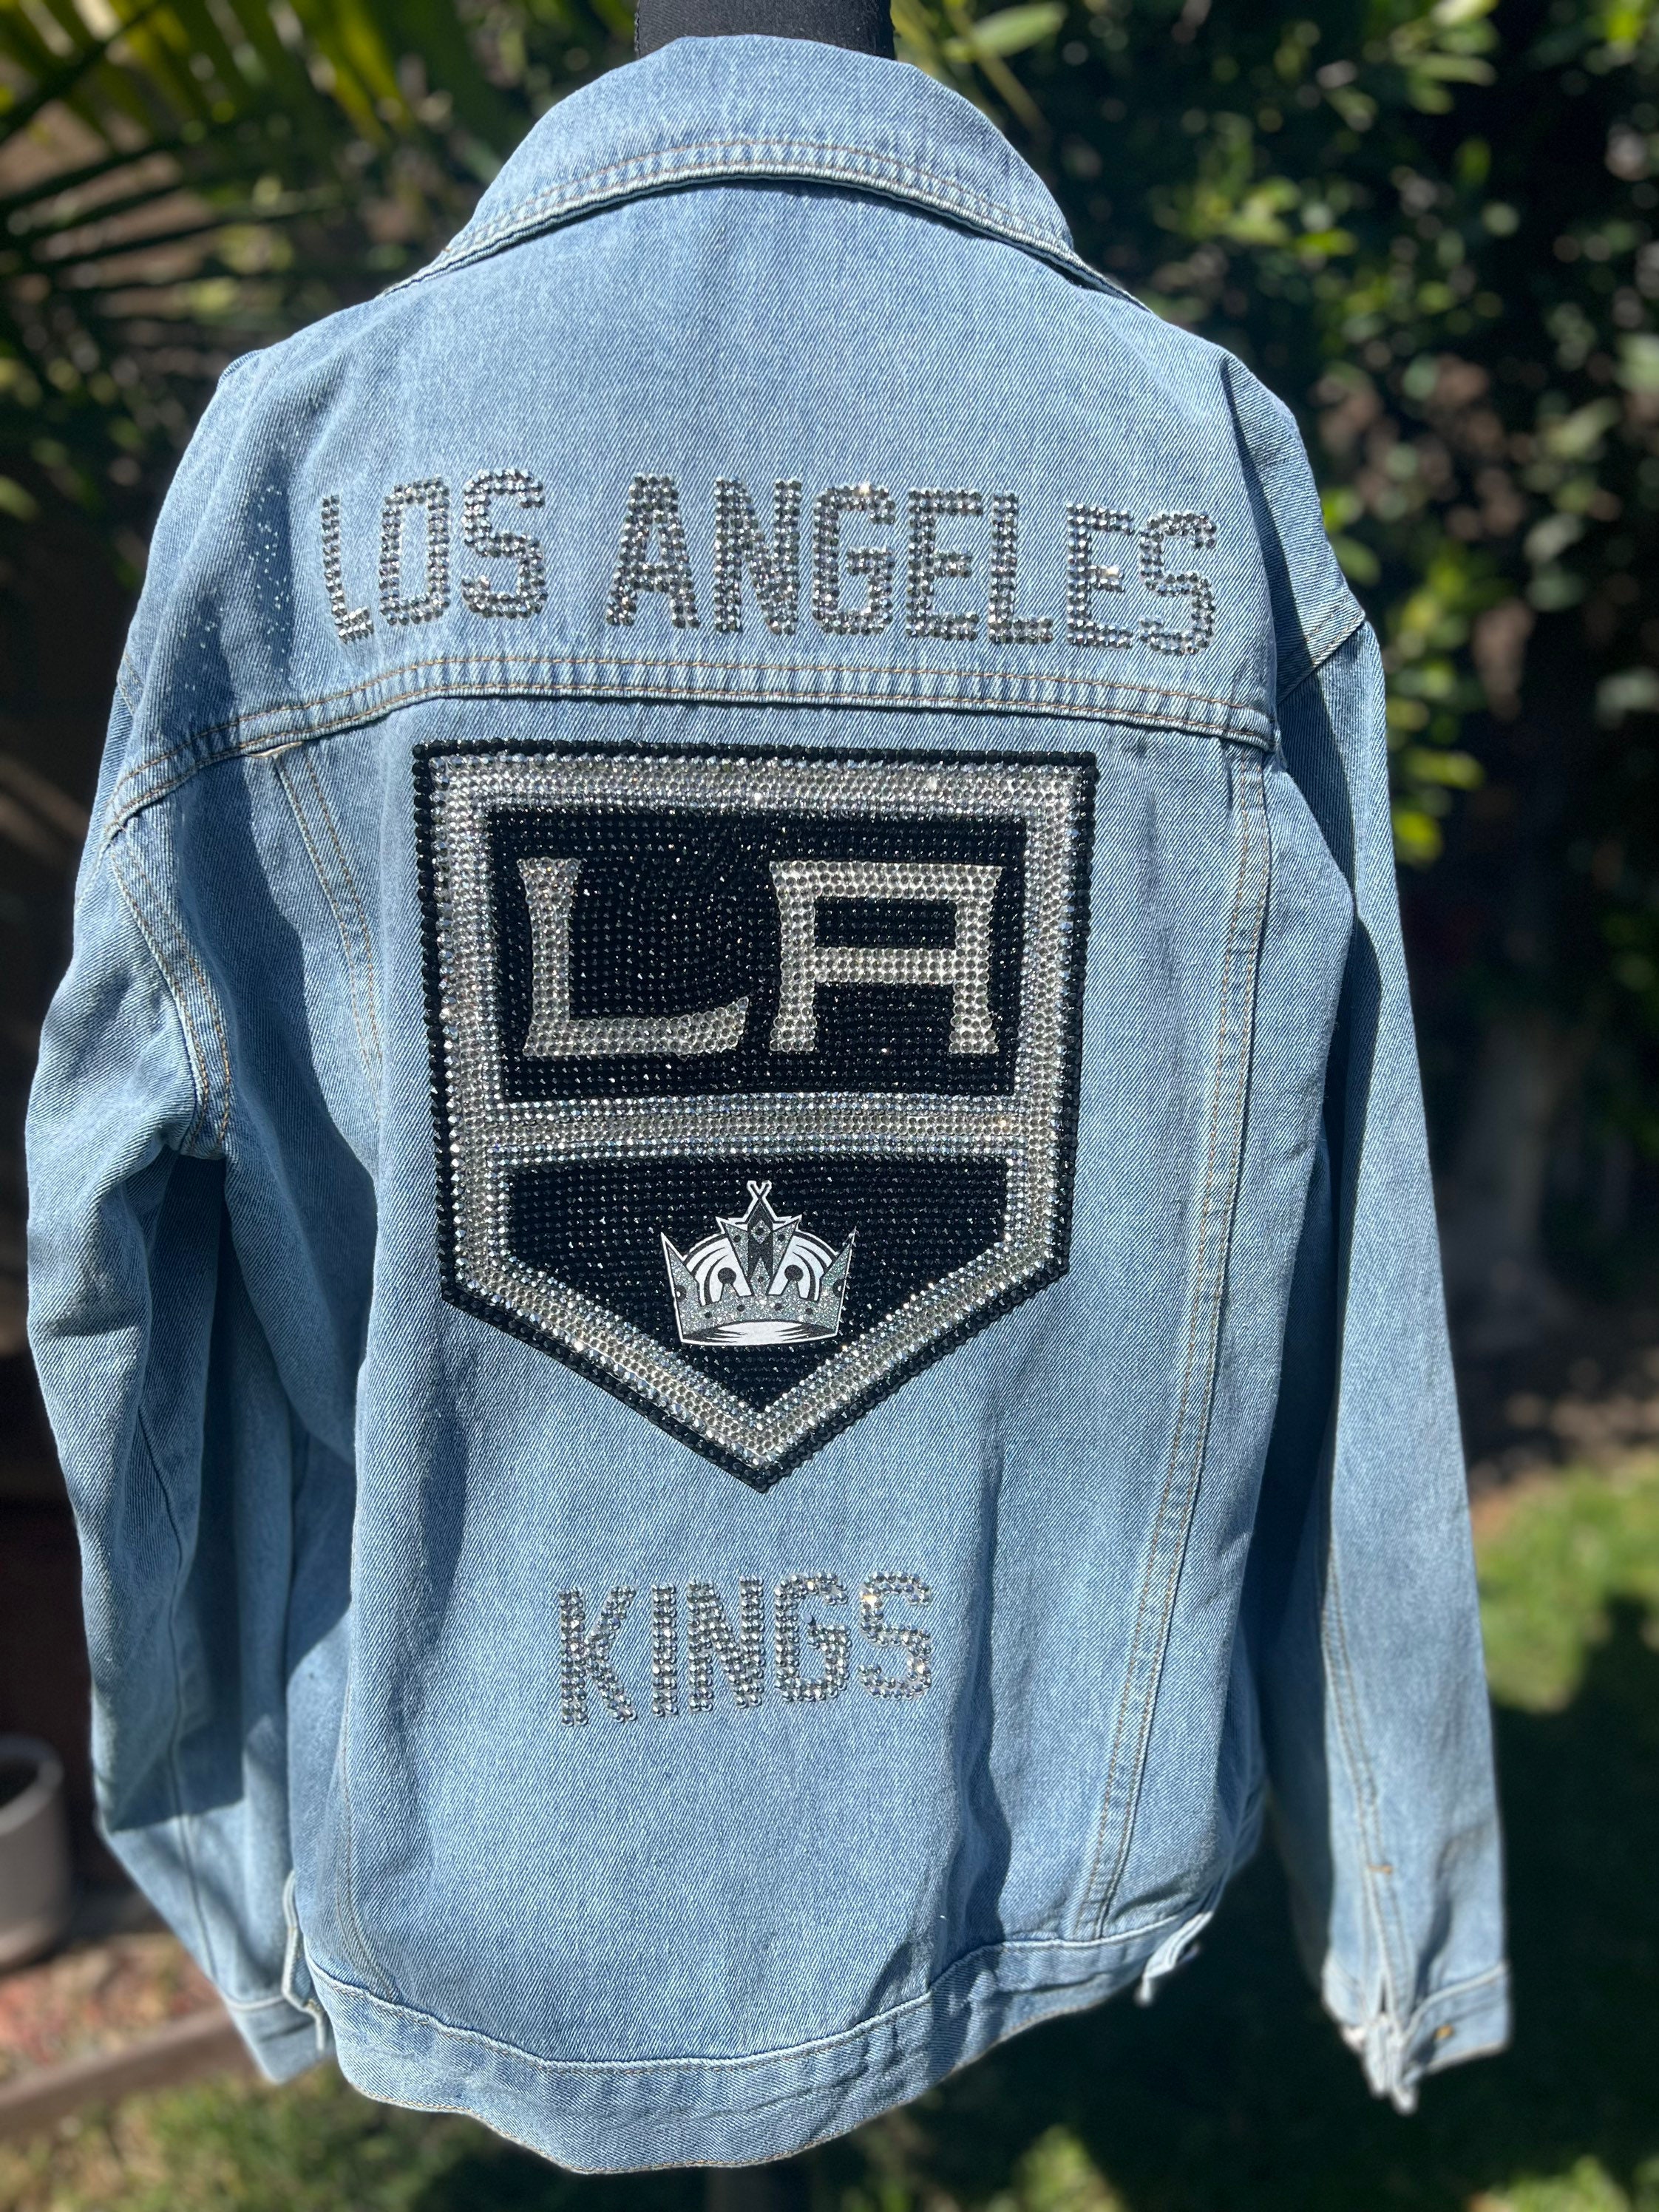  Men's Los Angeles Kings Vintage Rockaway Lacer Pullover Hoodie  - Size Medium : Sports & Outdoors